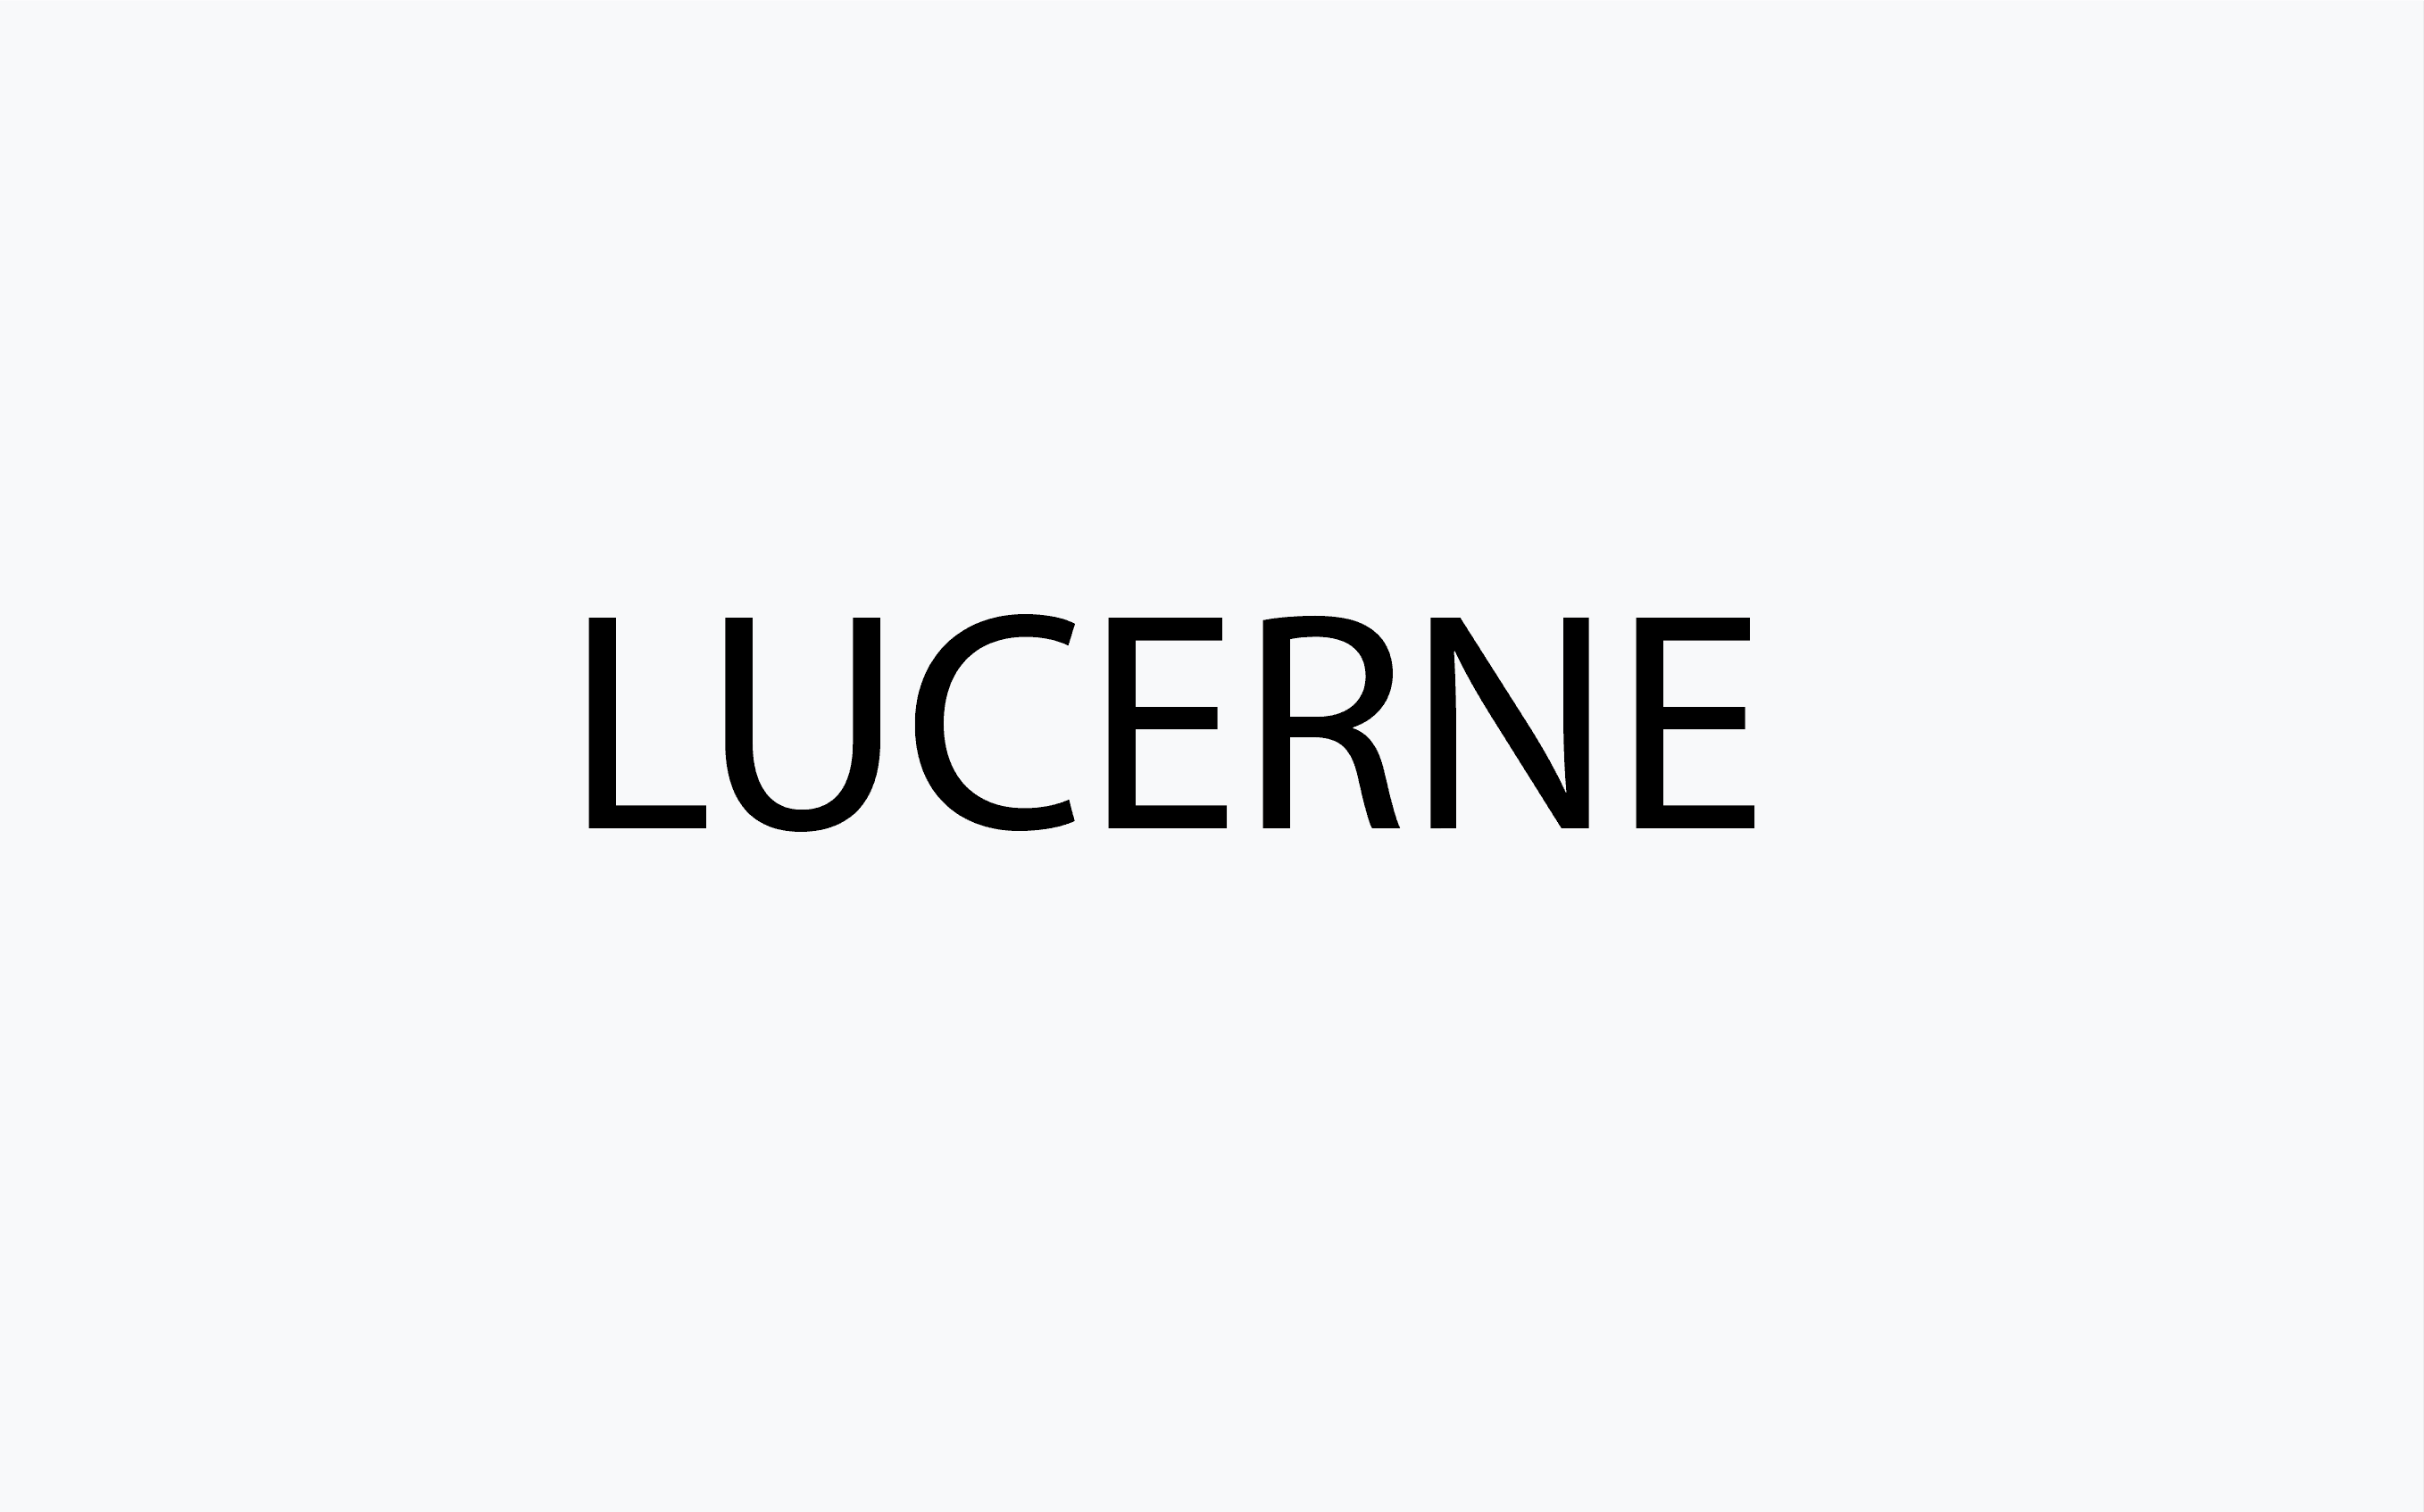 Lucerne category